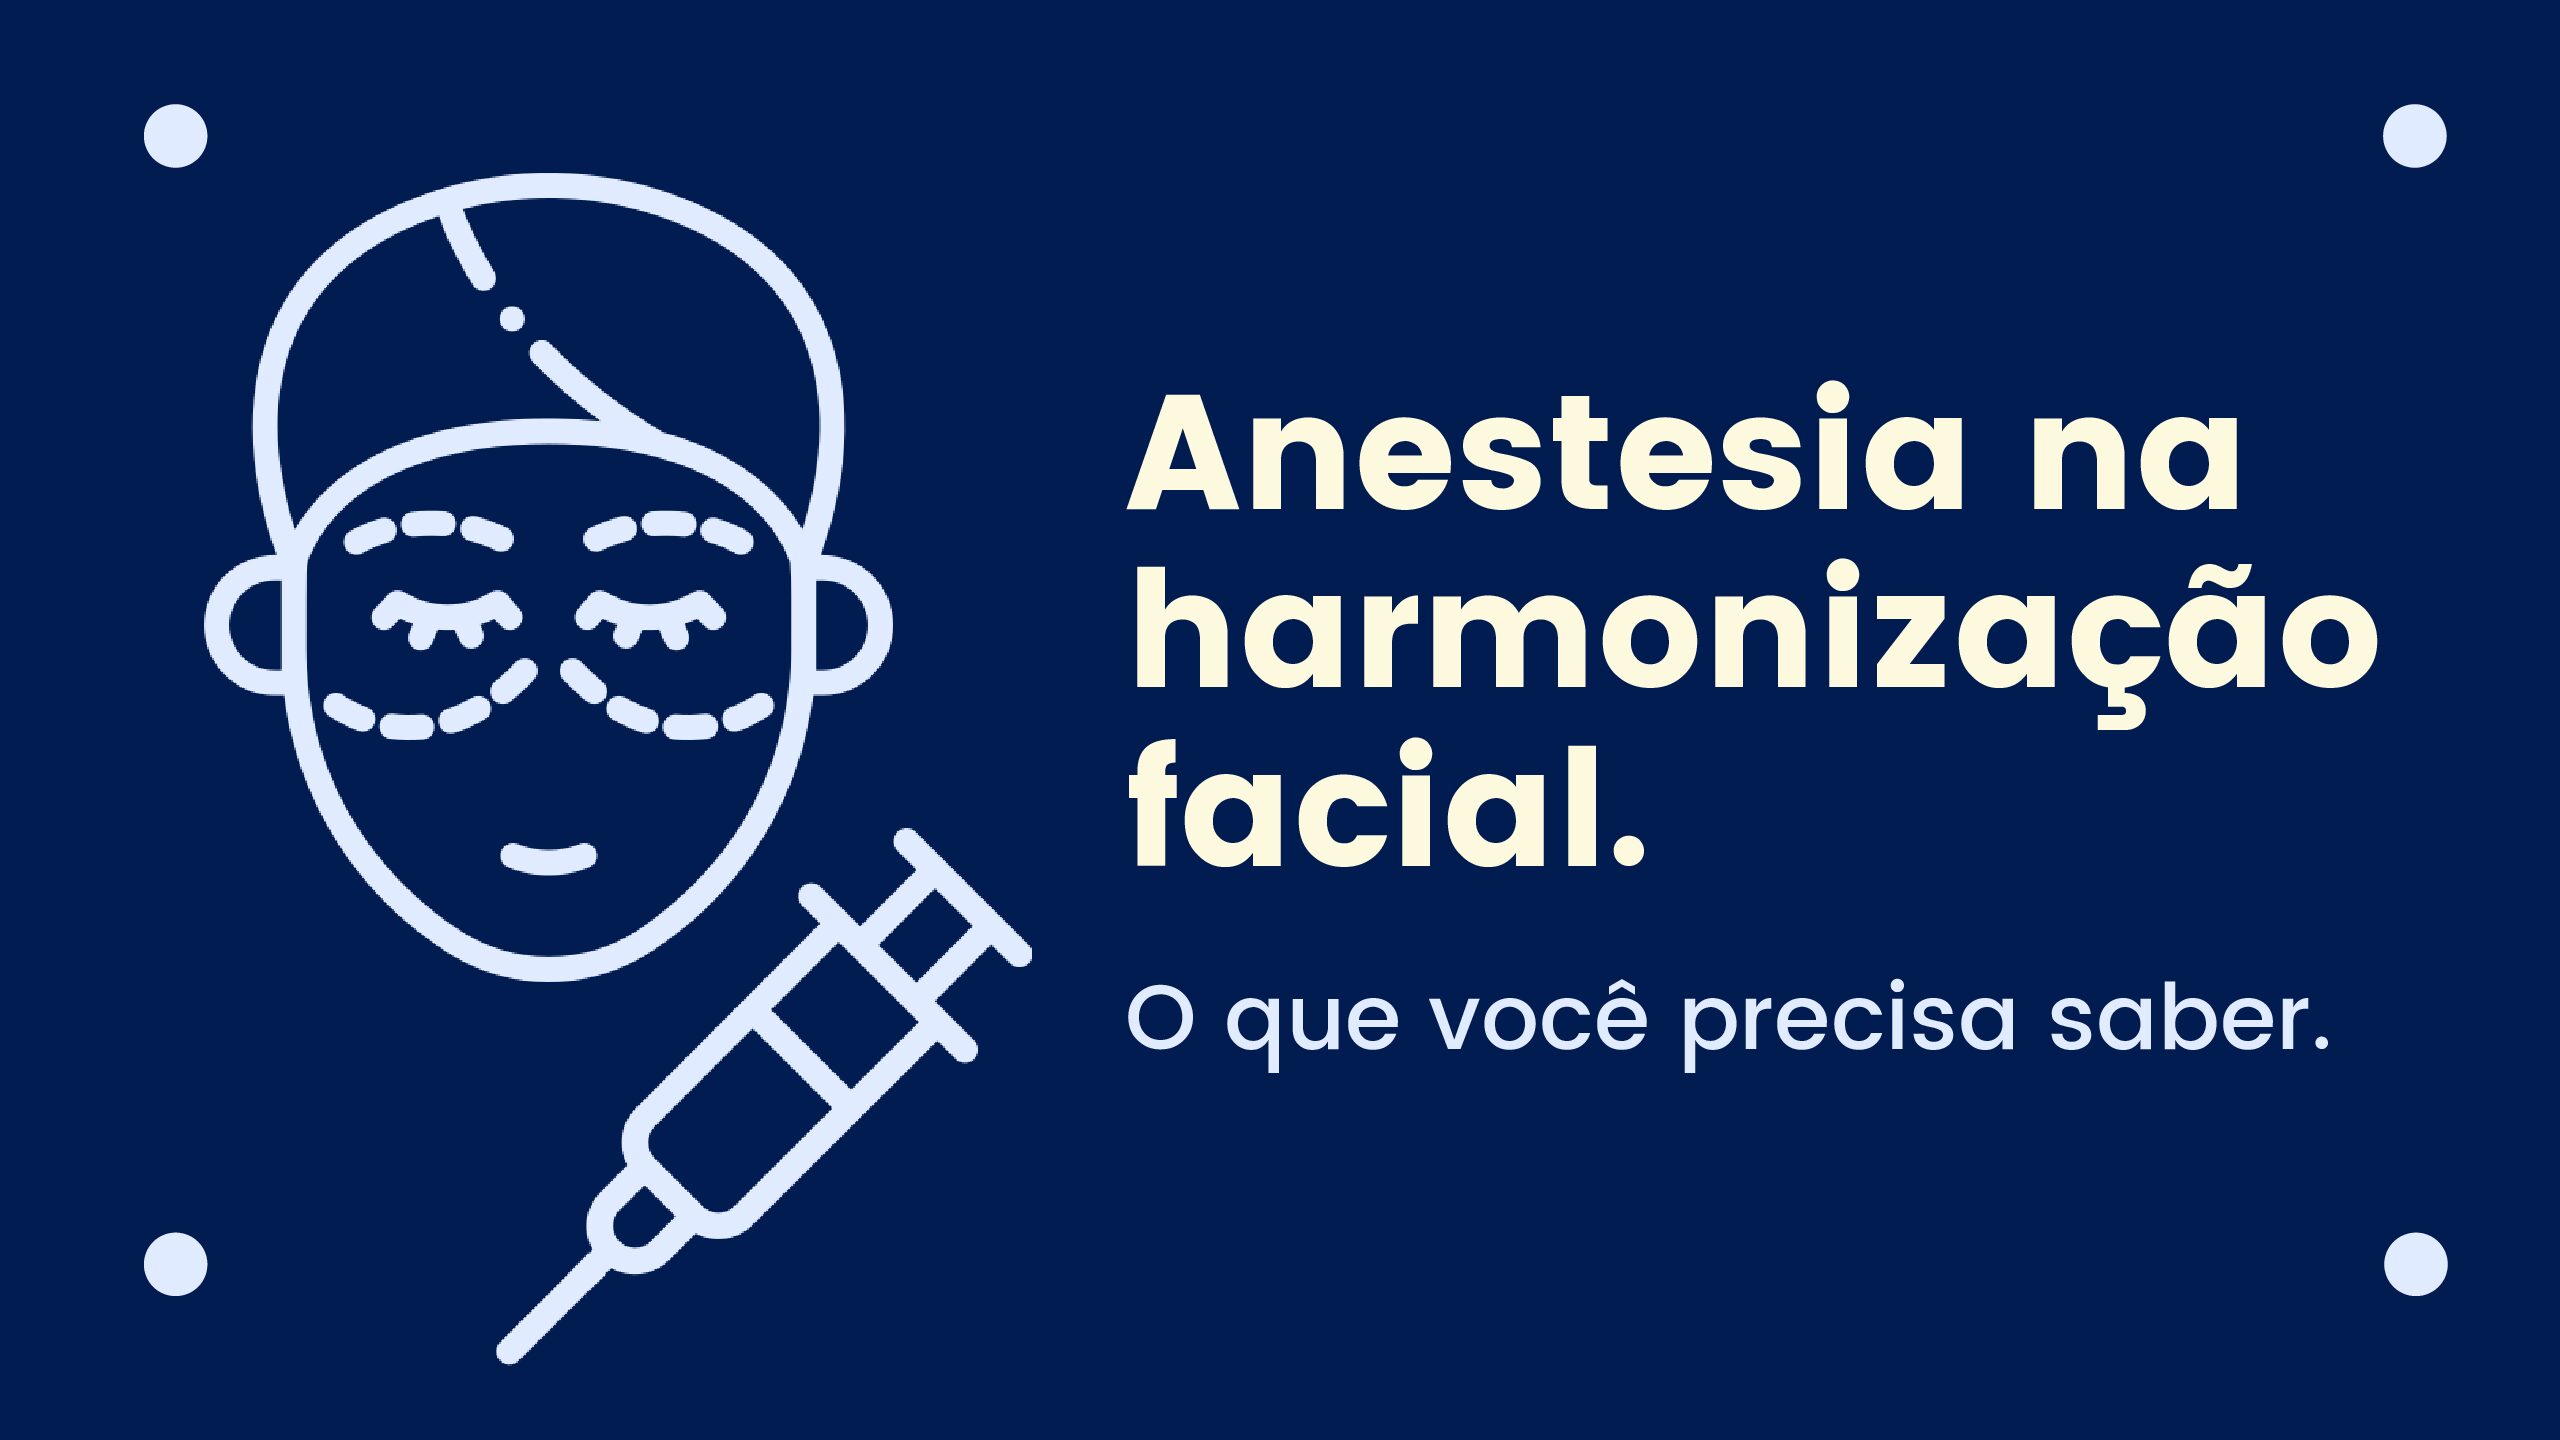 [INFOGRÁFICO] O que você precisa saber sobre anestesia em harmonização facial.